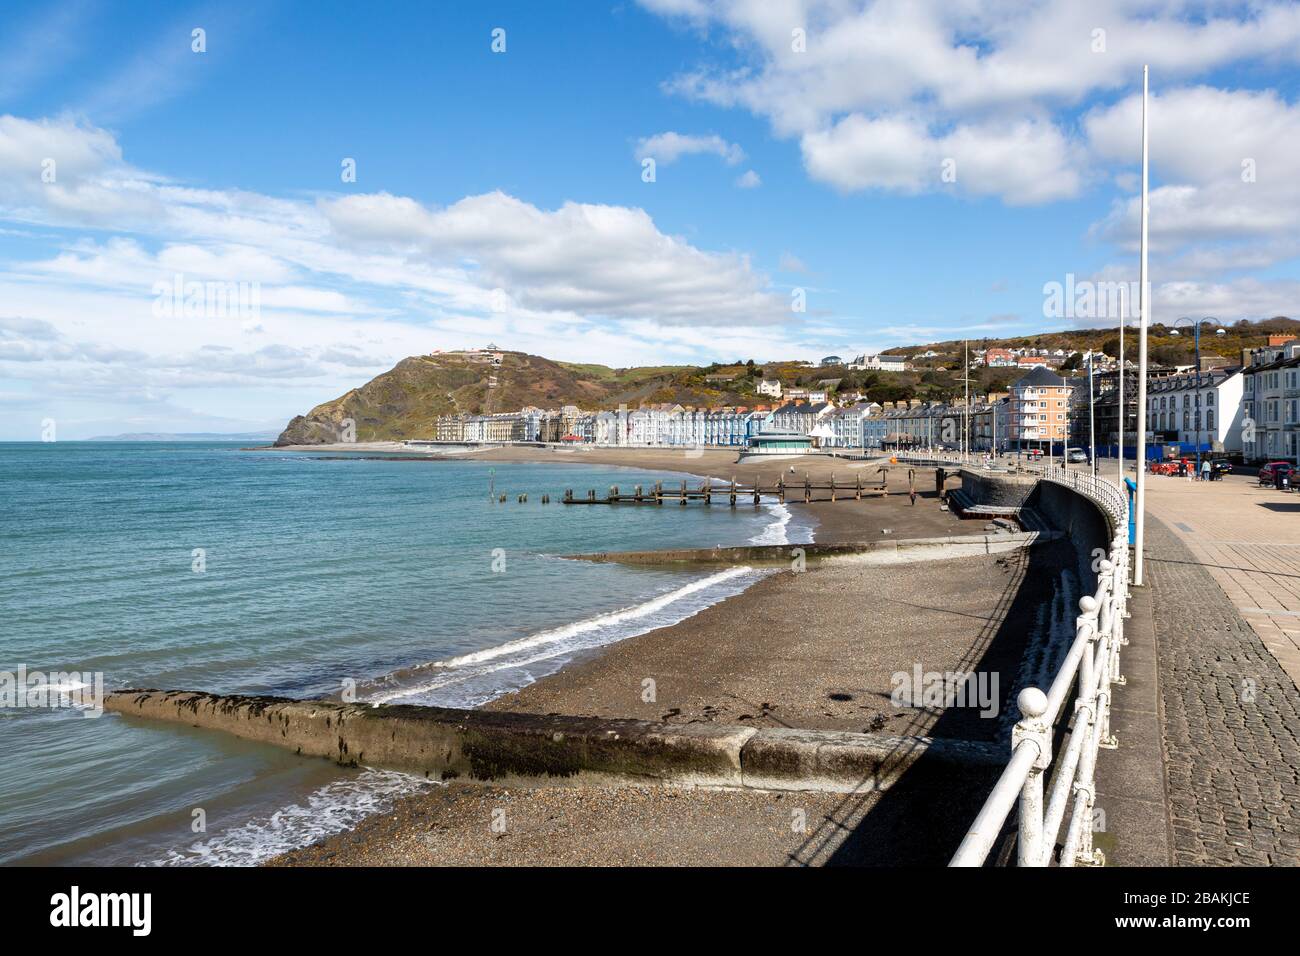 Aberystwyth, Ceredigion, Wales, Großbritannien. Am Strand und an der Promenade der Küstenstadt Aberystwyth ist am 28. März 2020 EIN surreales Gefühl wie kaum eine Handvoll Menschen zu sehen, da die Menschen aufgrund des Coronavirus und der umgesetzten staatlichen Verbote für nicht-wesentliche Reisen zu Hause bleiben. Unter normalen Umständen würden Hunderte von Menschen bei warmem Wetter die Promenade und die Strände erkunden. © Ian Jones/Alamy Live News Stockfoto